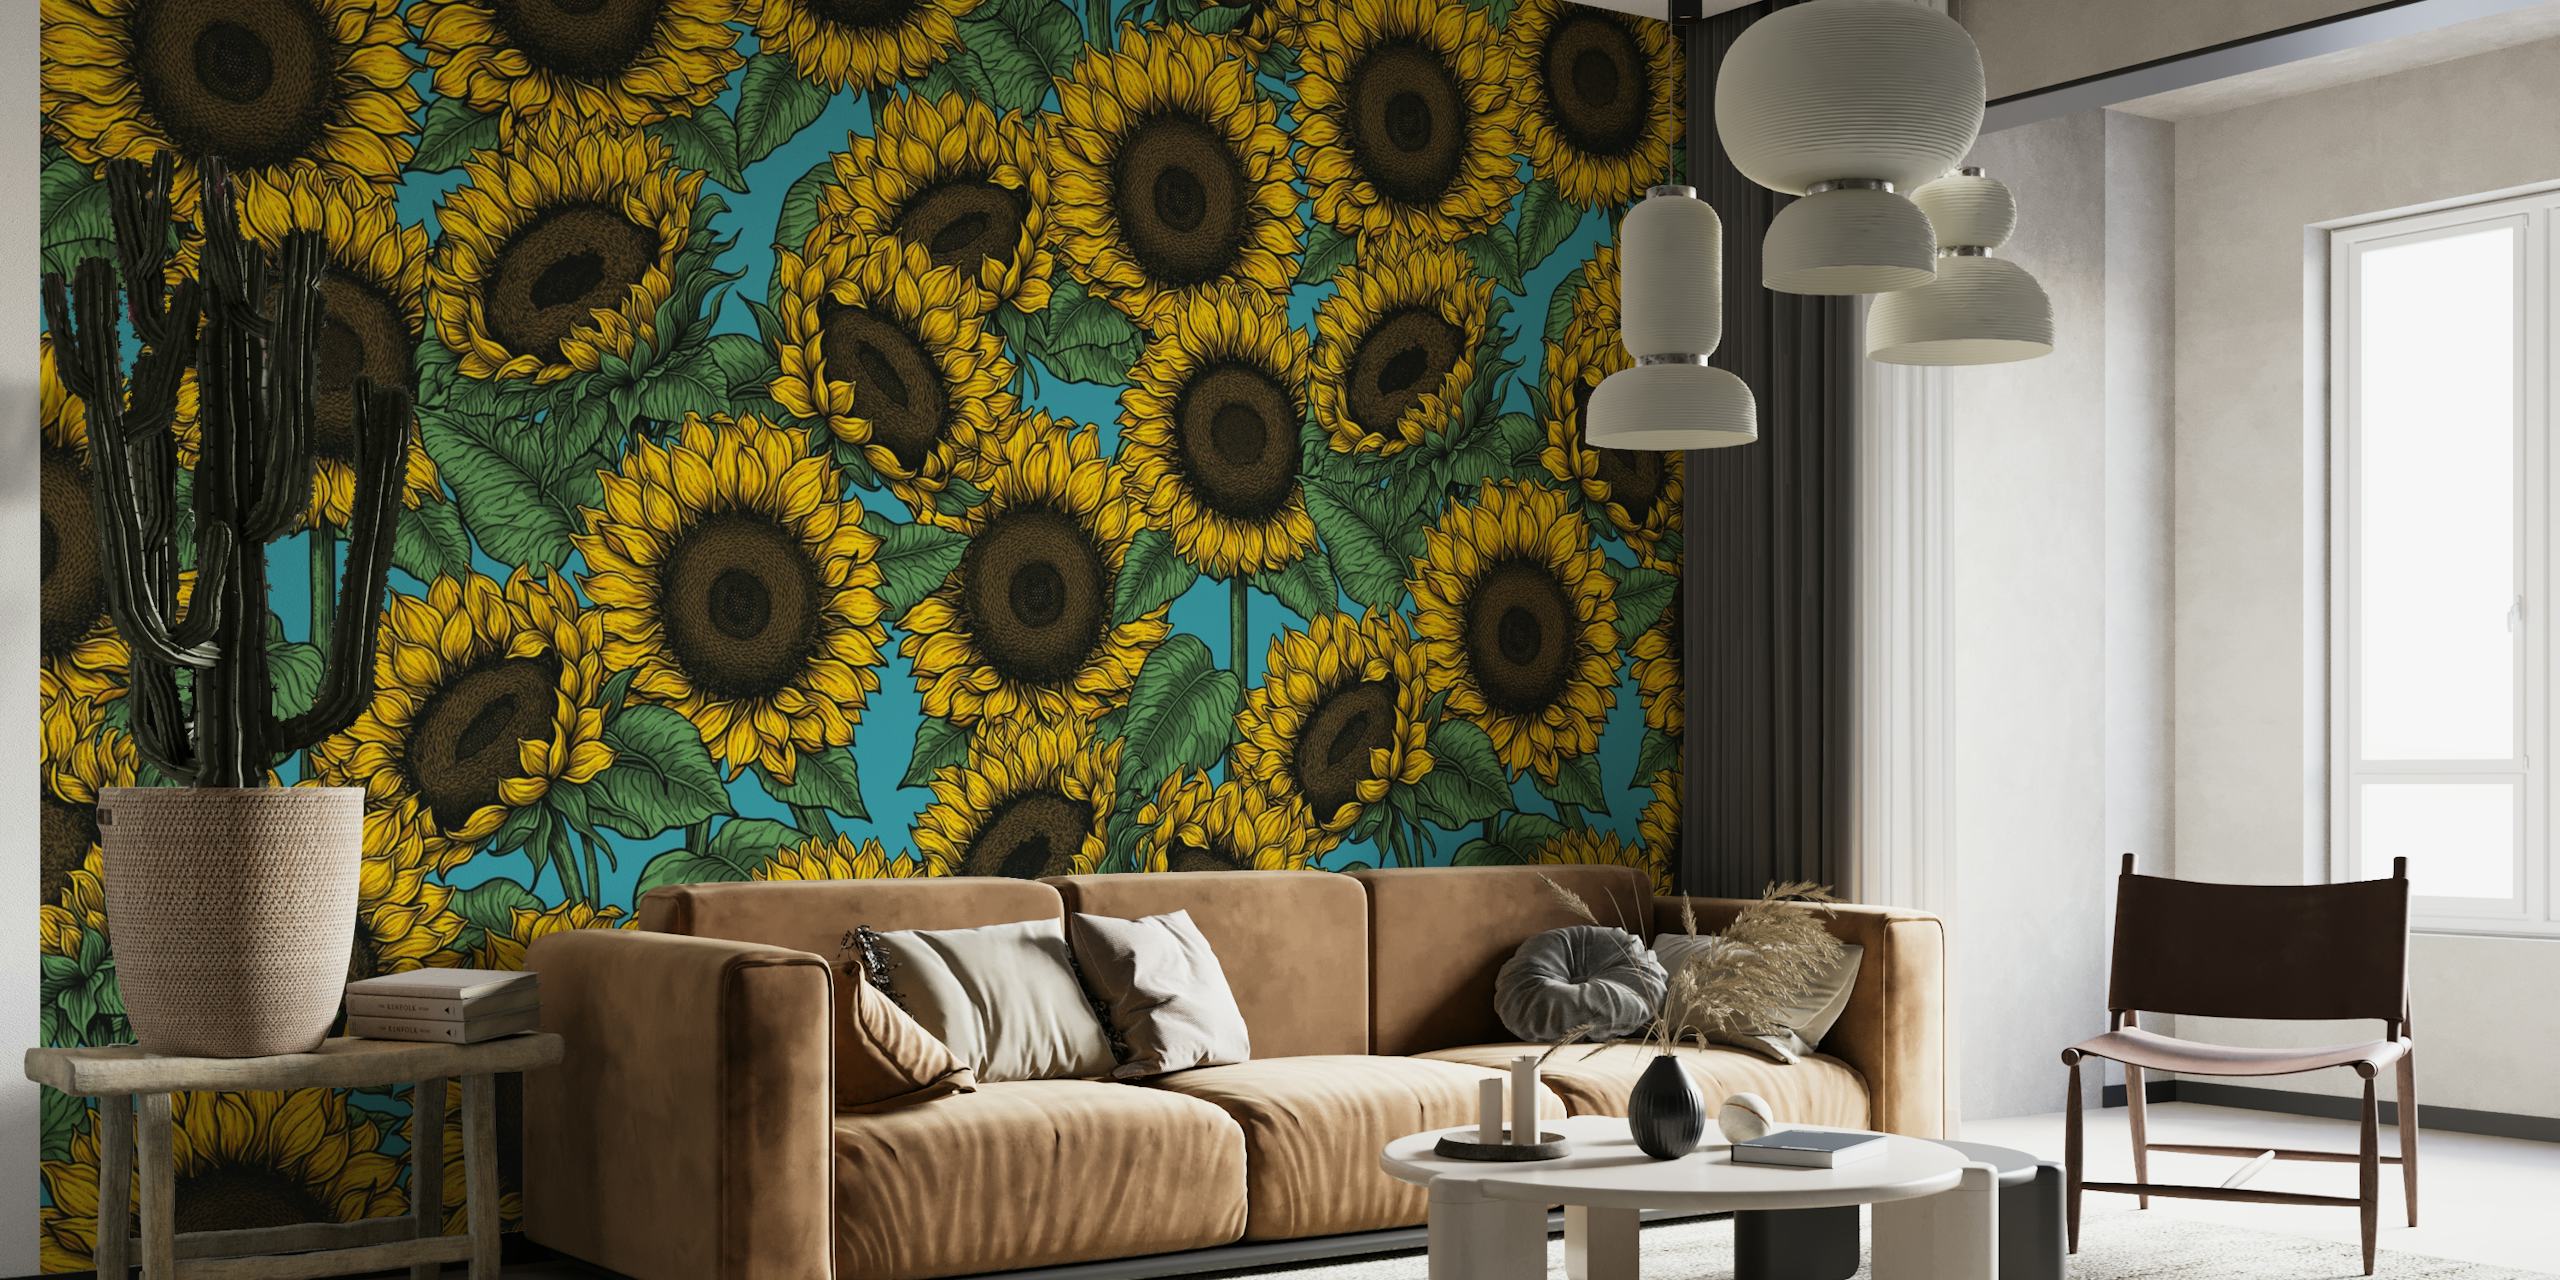 Vibrante mural de pared de girasoles con un fondo rico y contrastante, perfecto para añadir un toque floral a cualquier habitación.